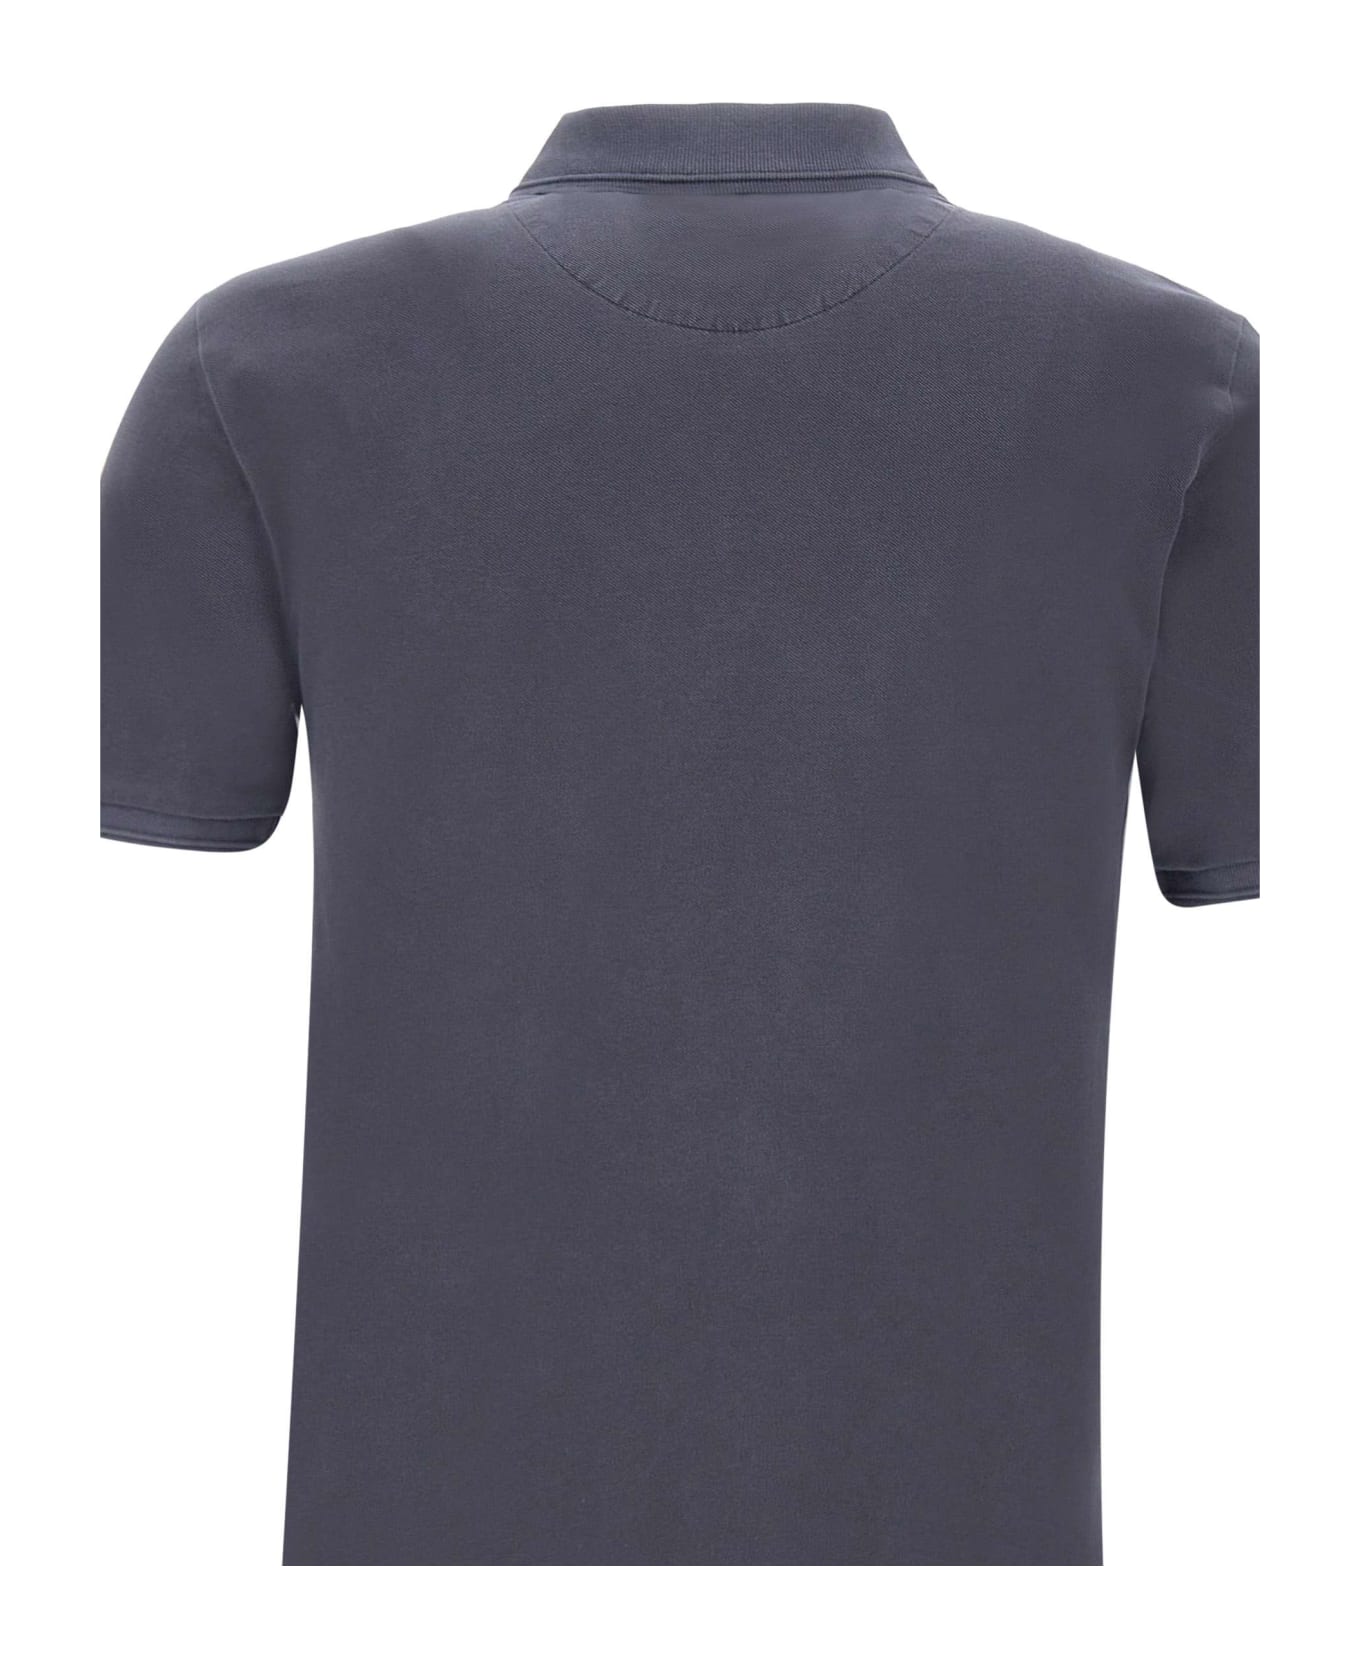 Woolrich 'mackinak' Cotton Piquet Polo Shirt - BLUE